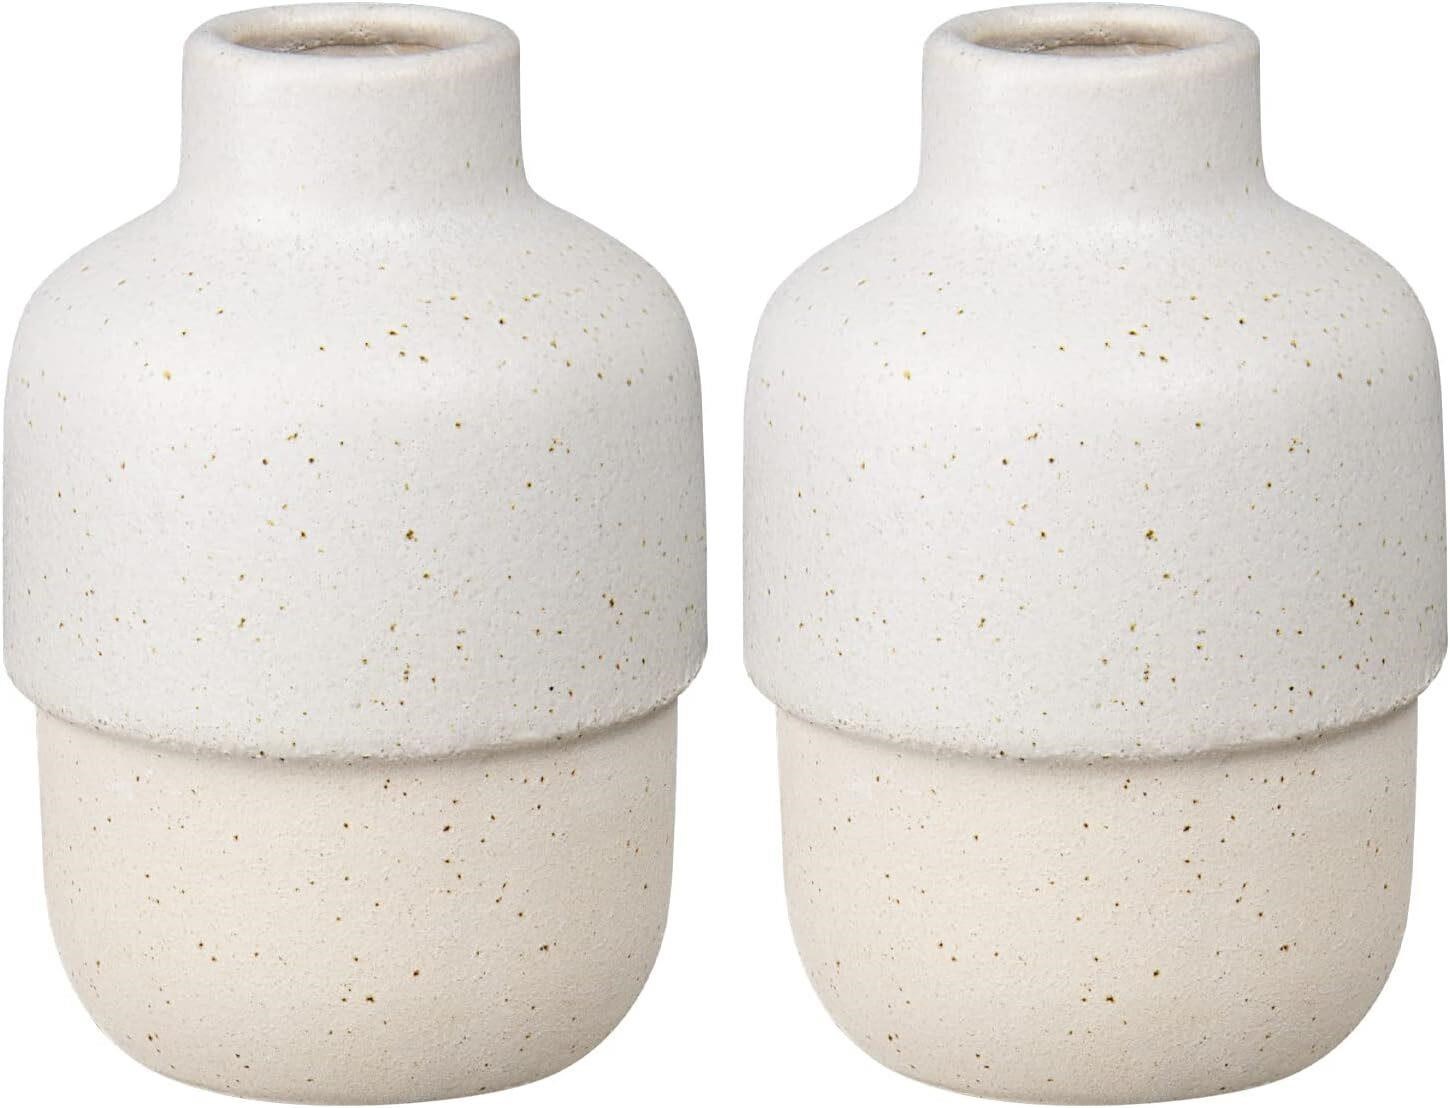 $40  Decorative Vases for Home Decor Modern White